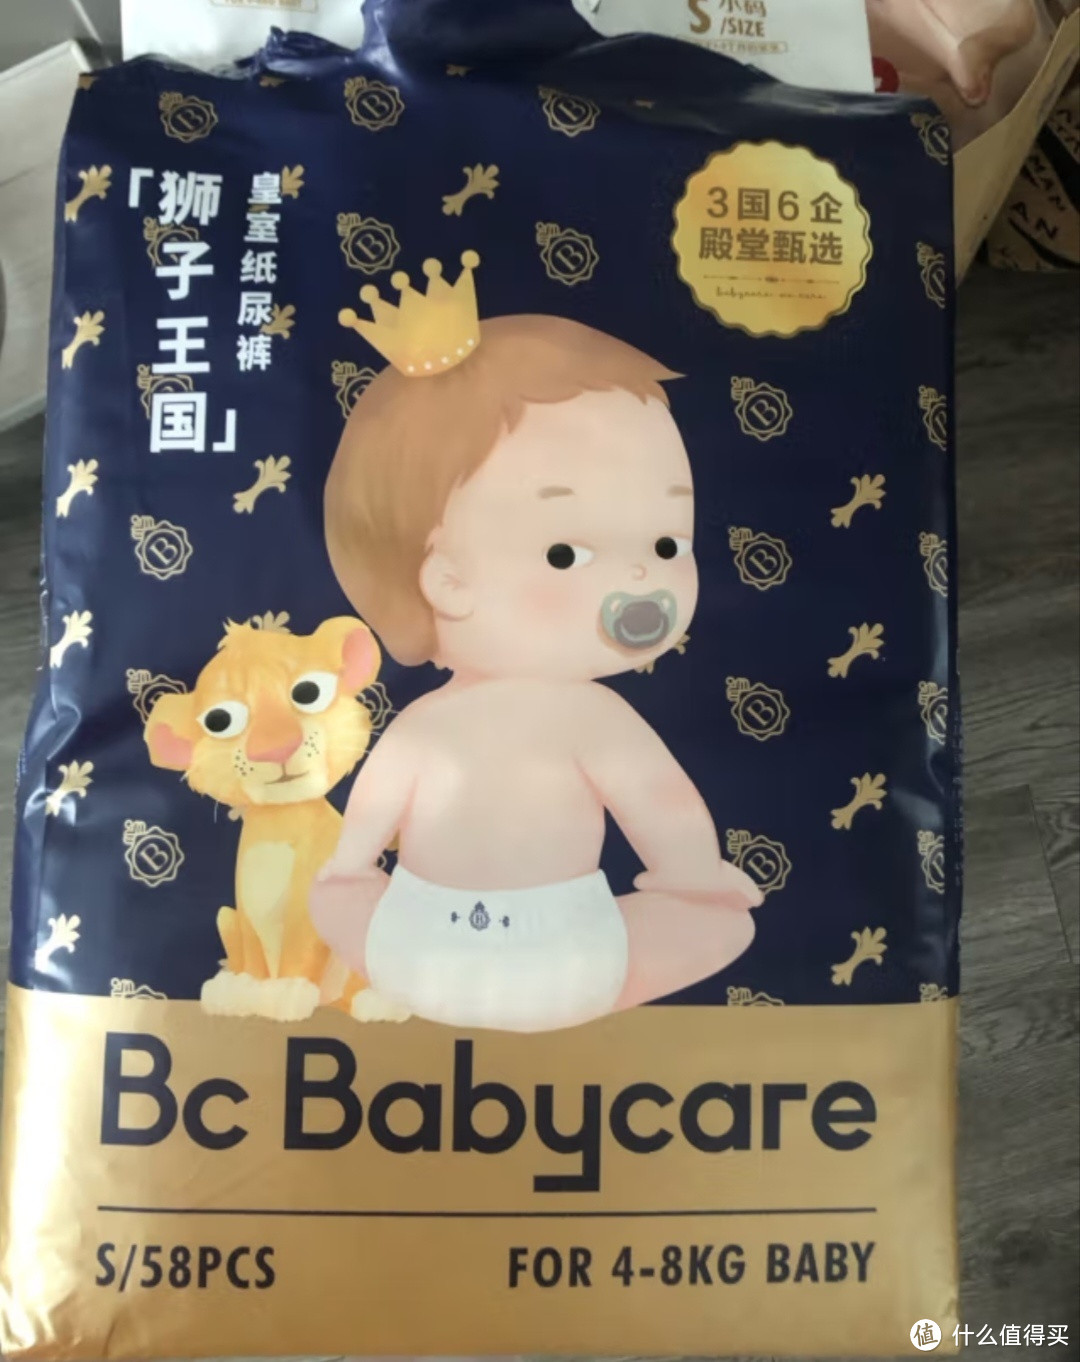 babycare皇室狮子王国弱酸纸尿裤